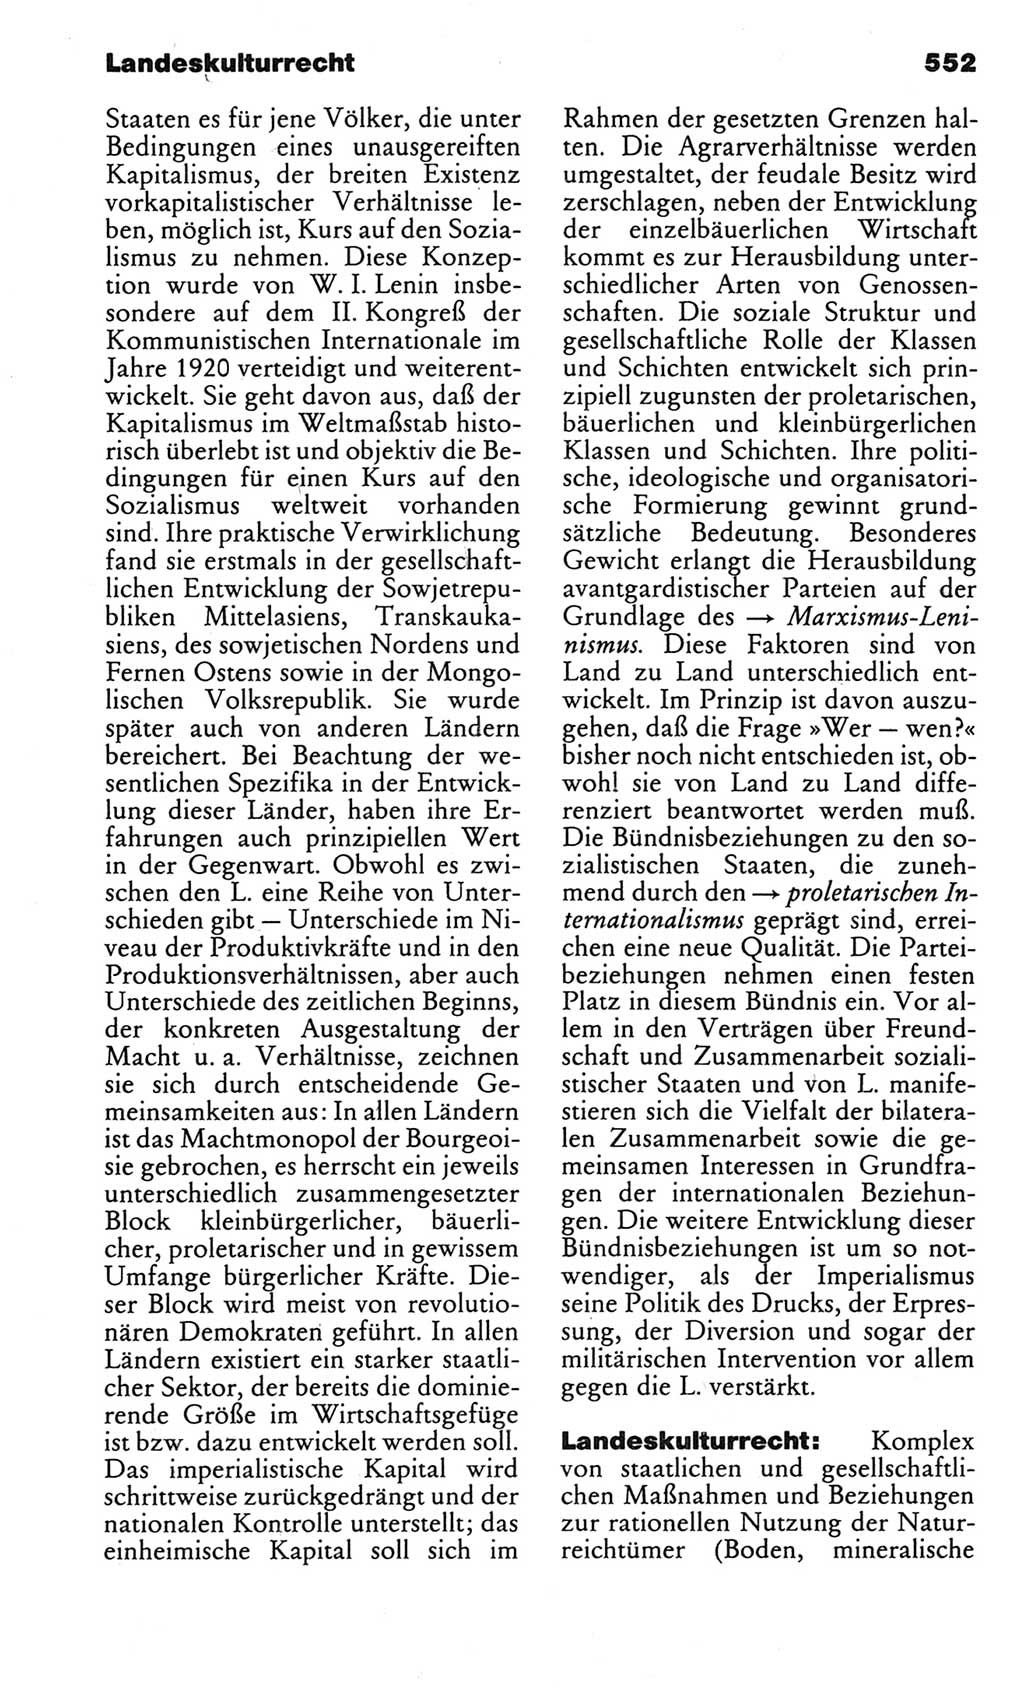 Kleines politisches Wörterbuch [Deutsche Demokratische Republik (DDR)] 1983, Seite 552 (Kl. pol. Wb. DDR 1983, S. 552)